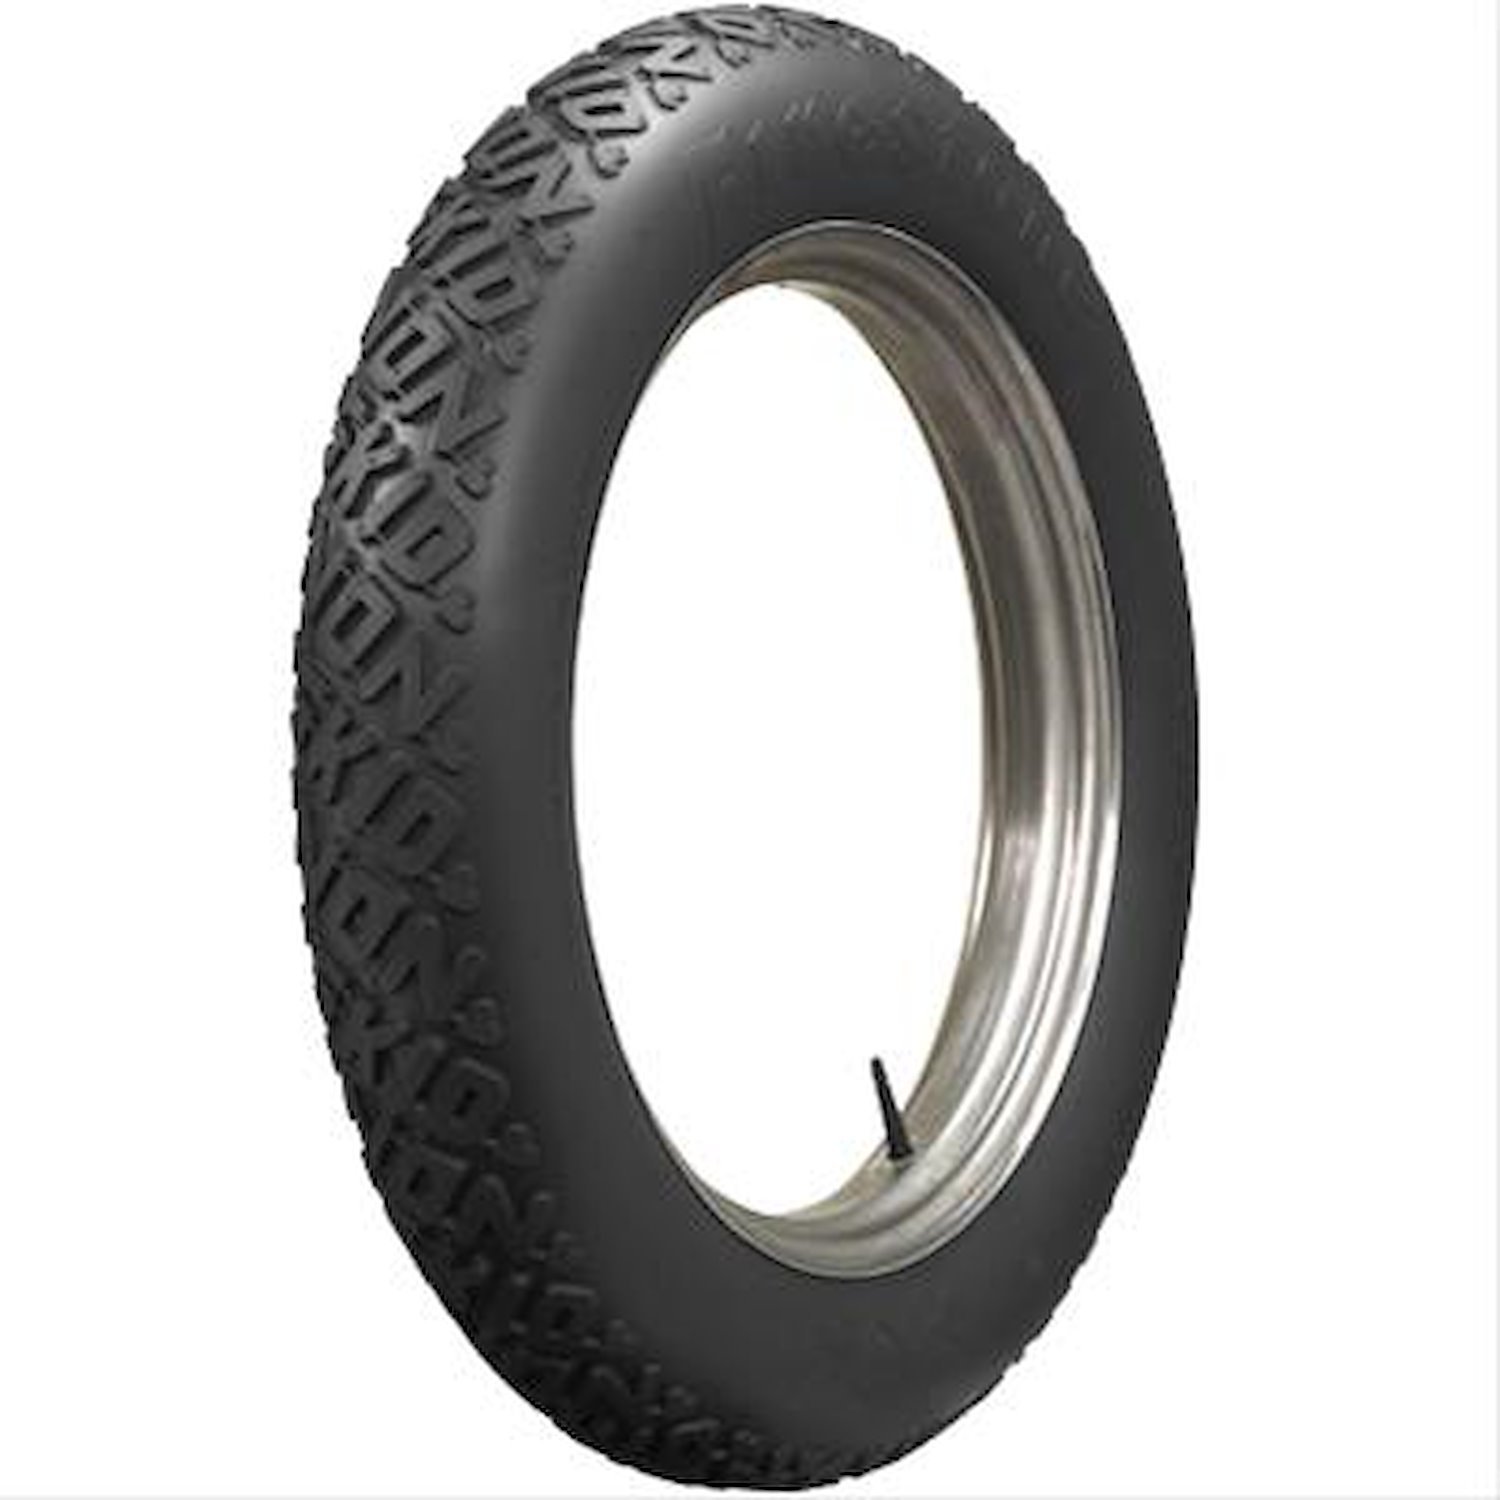 805990 Tire, Firestone Non-Skid, All Black, 33x45